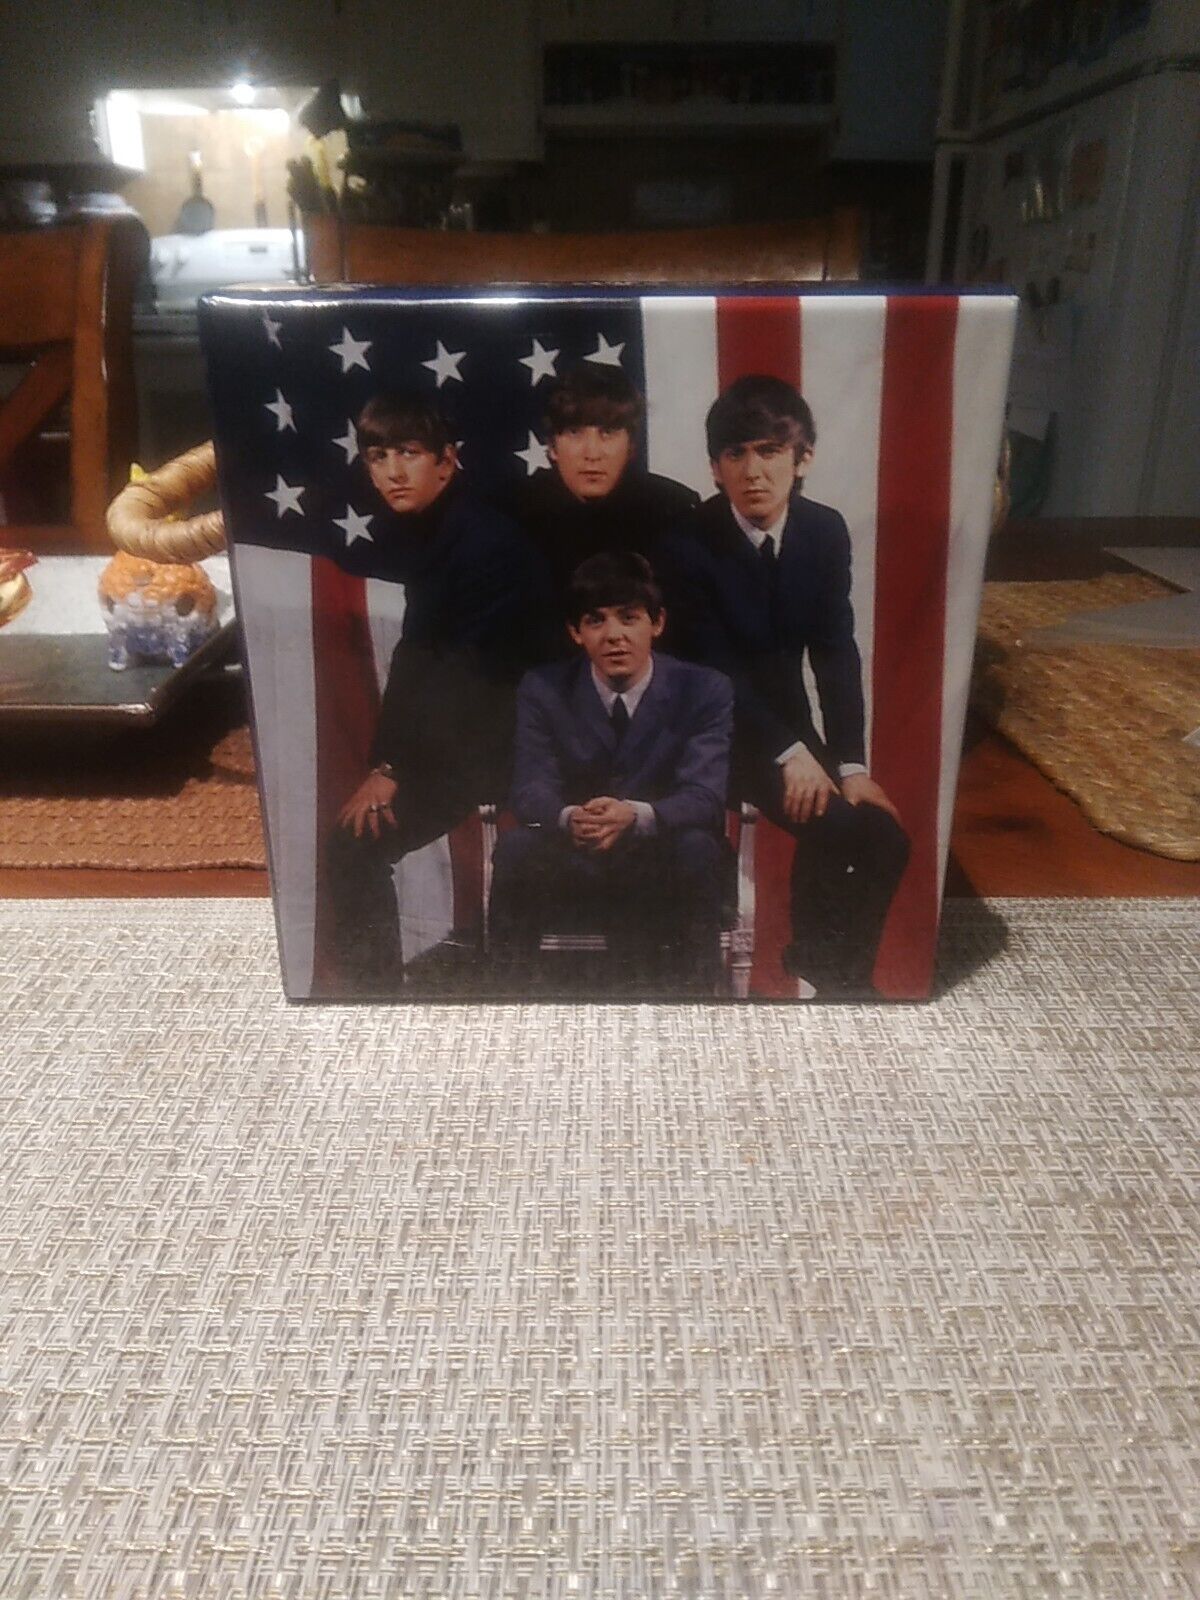 U.S. Albums by Beatles (CD, 2014)